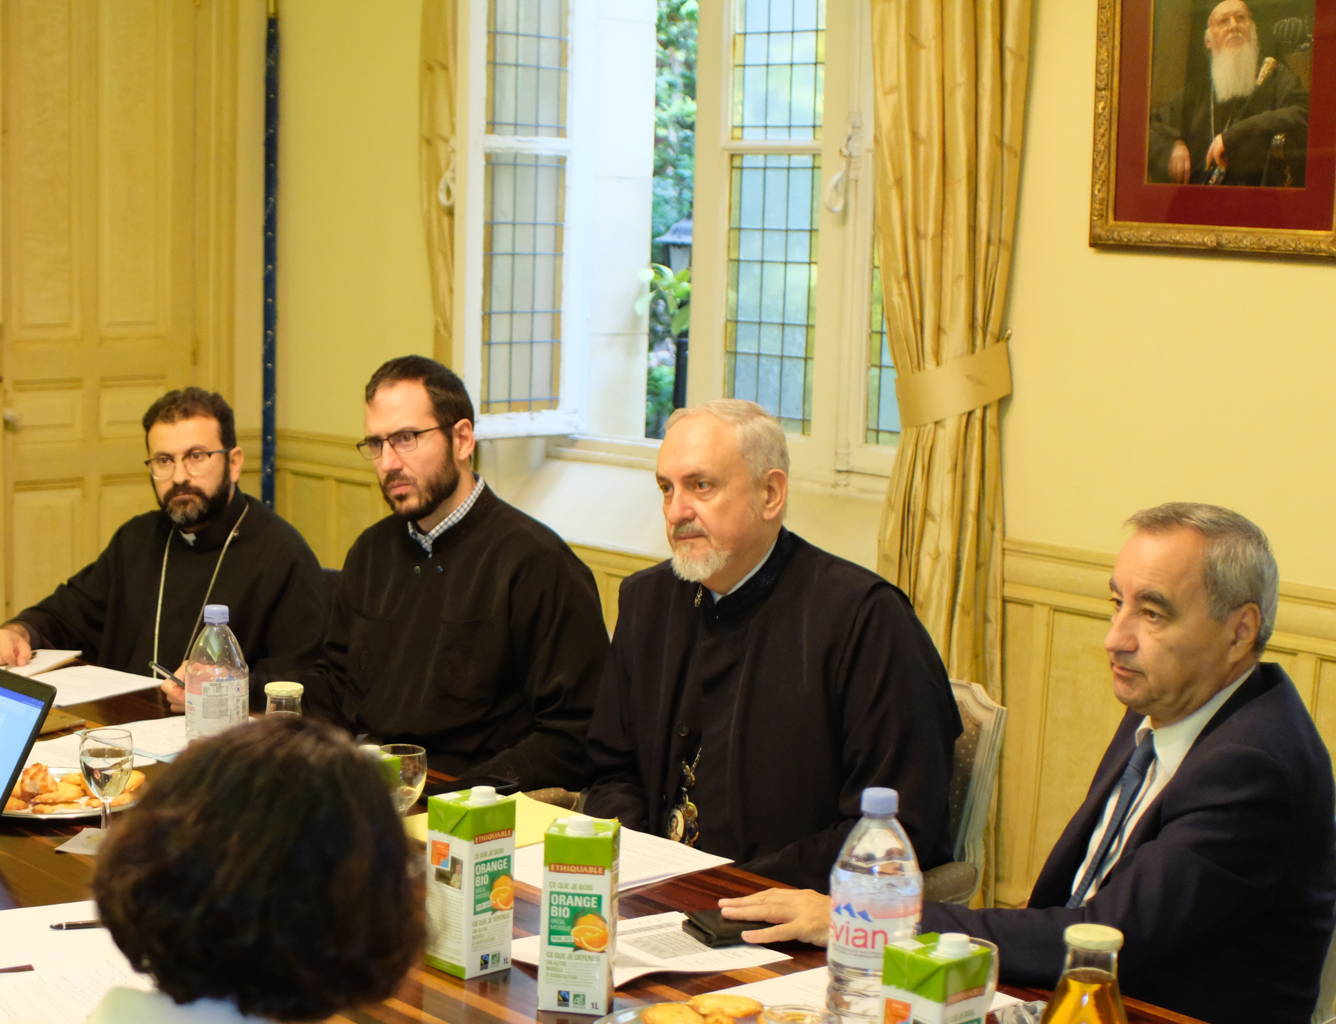 La réunion du cecef à la métropole grecque orthodoxe de france